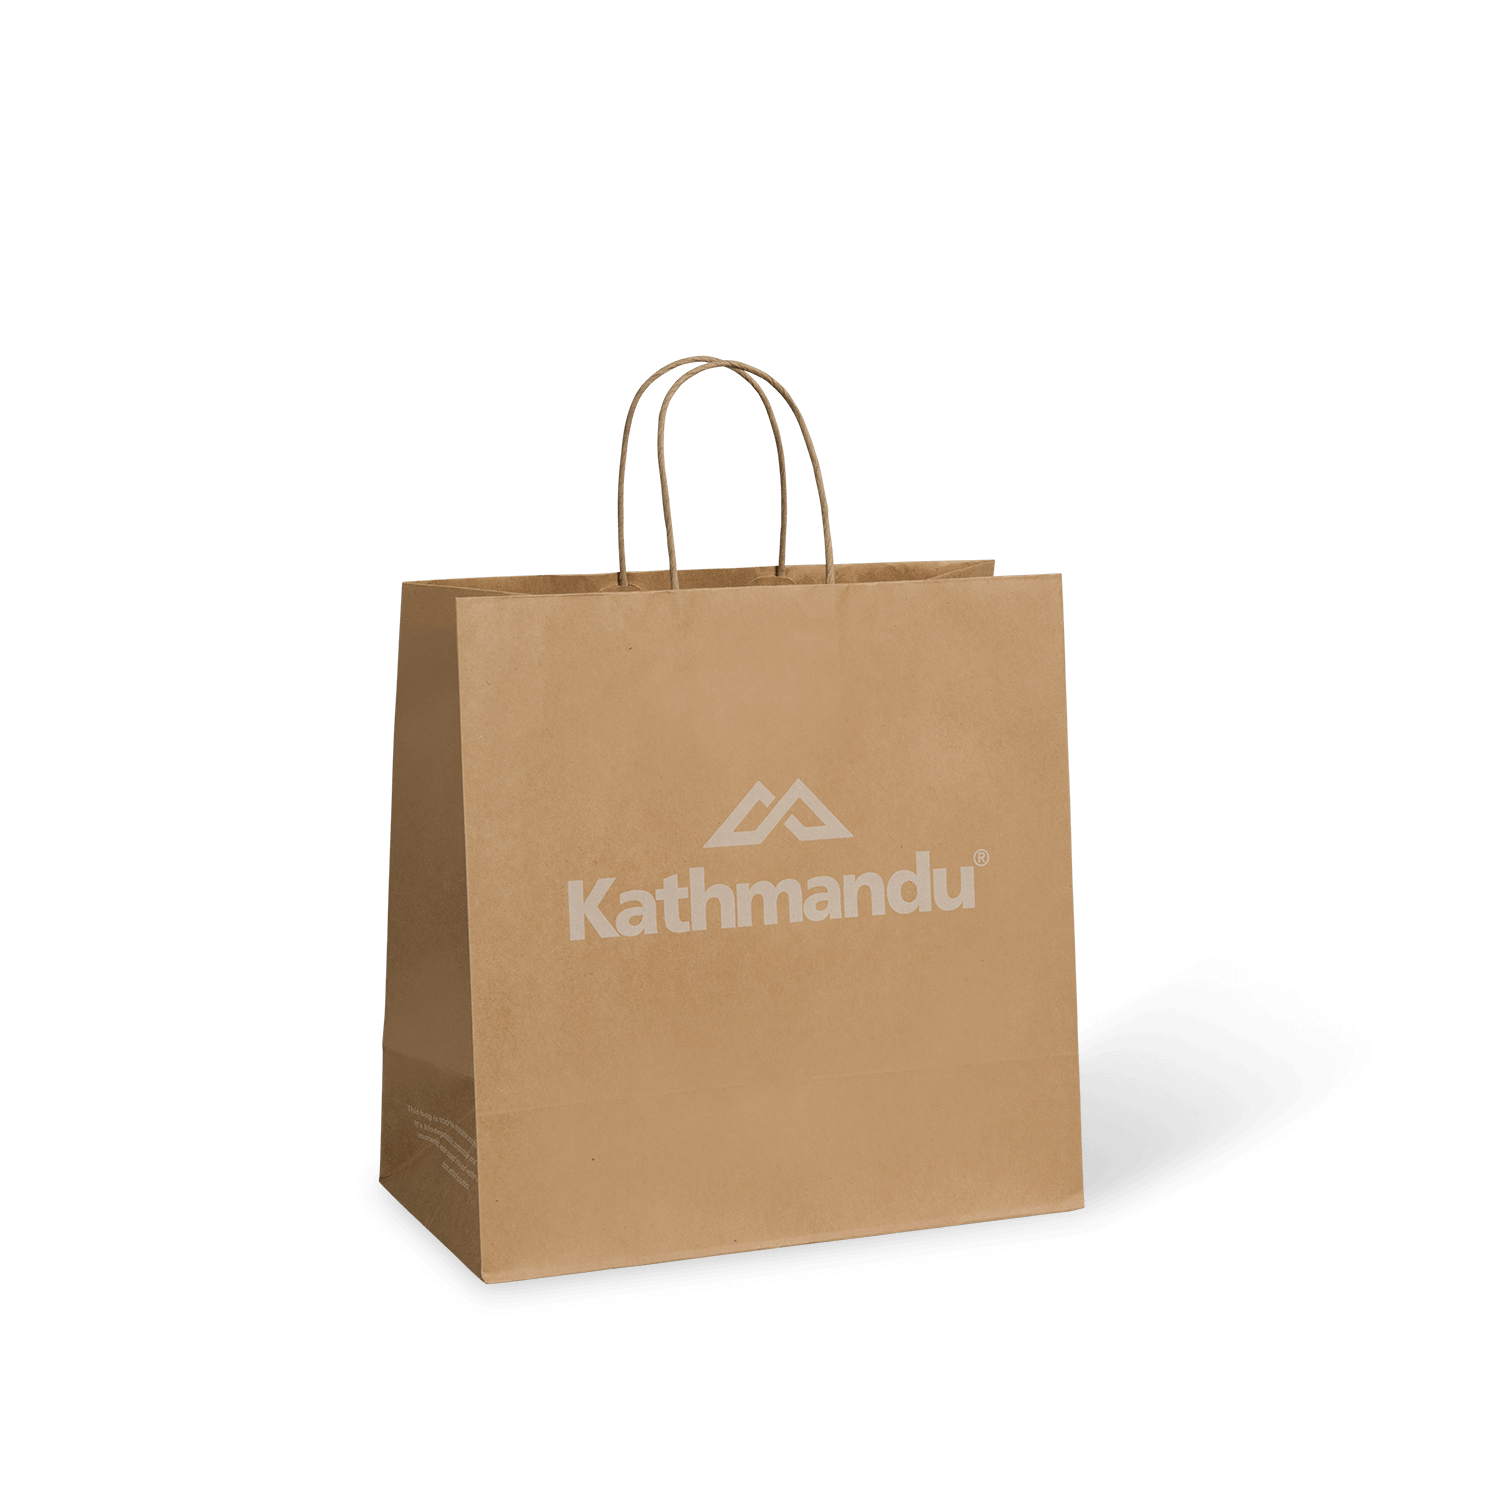 PaperPak Gallery Kathmandu custom printed kraft paper twist handle bag